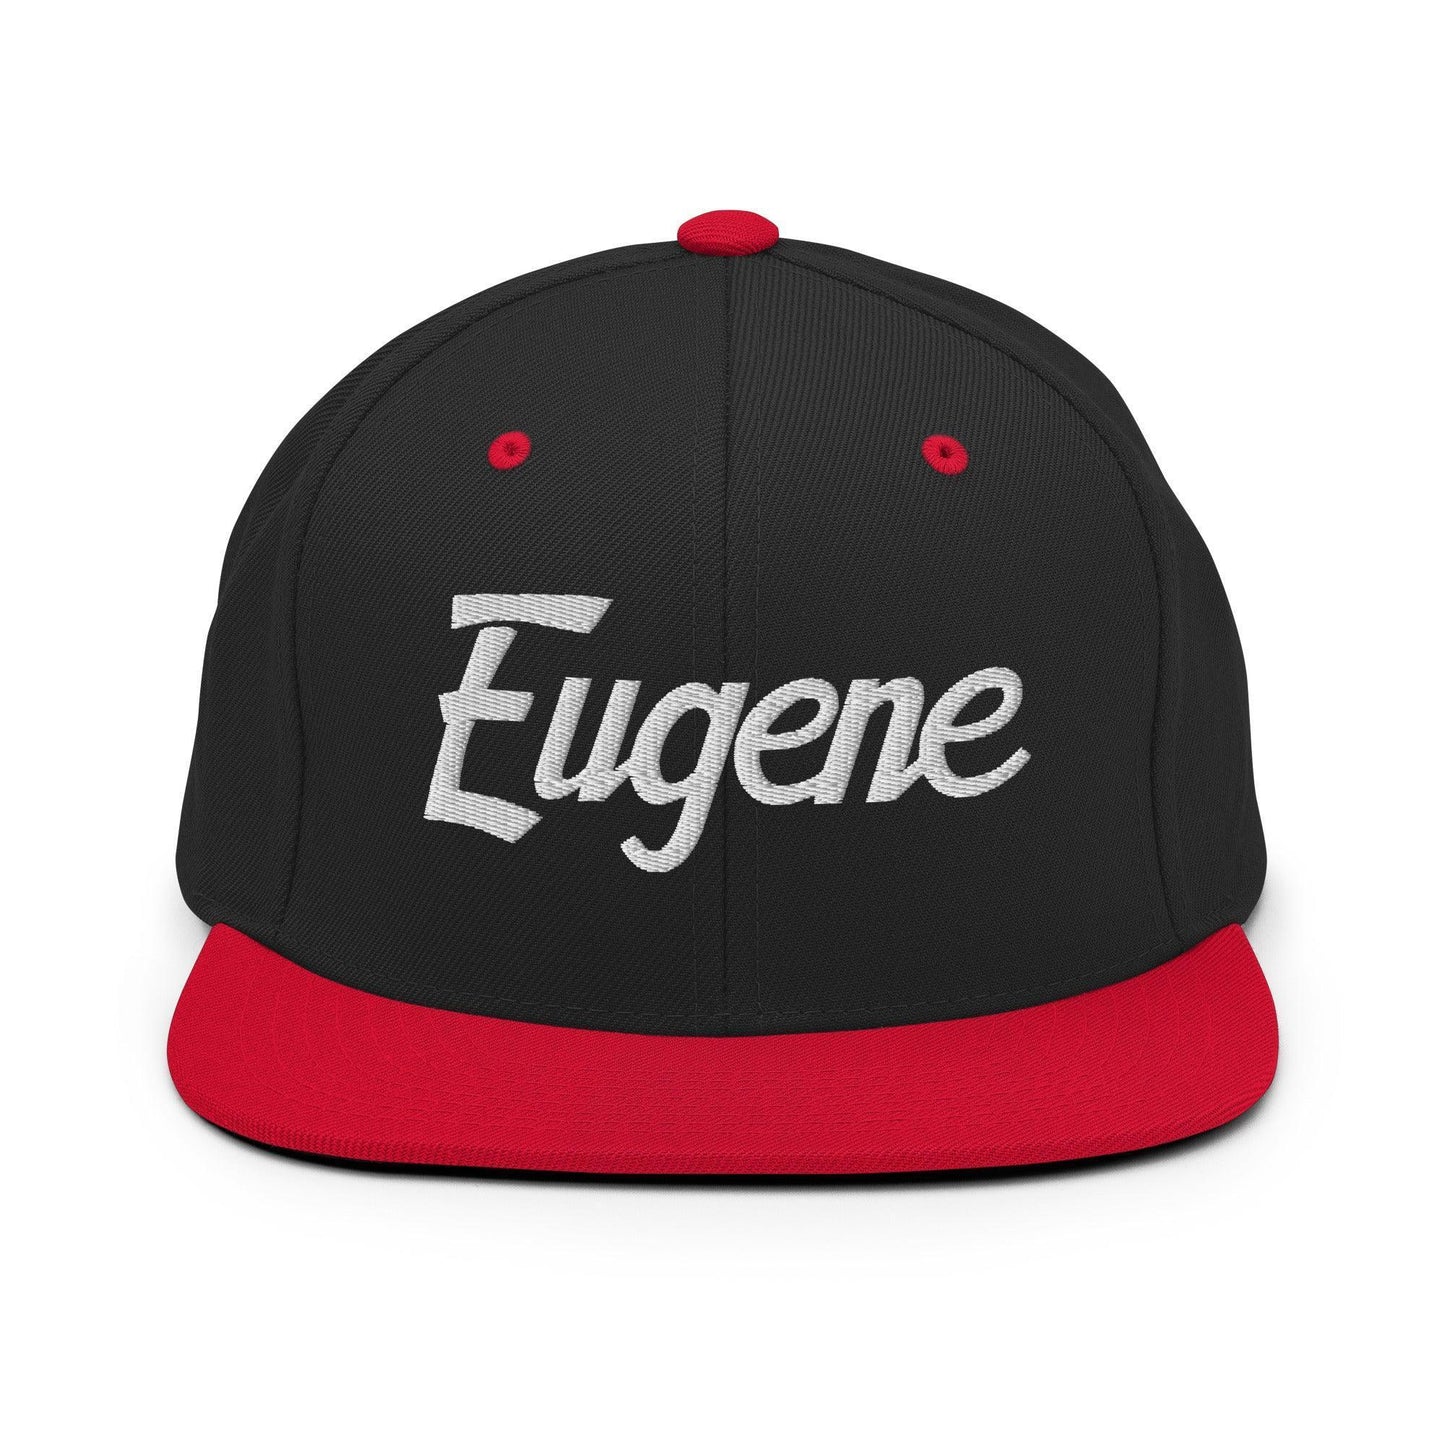 Eugene Script Snapback Hat Black Red